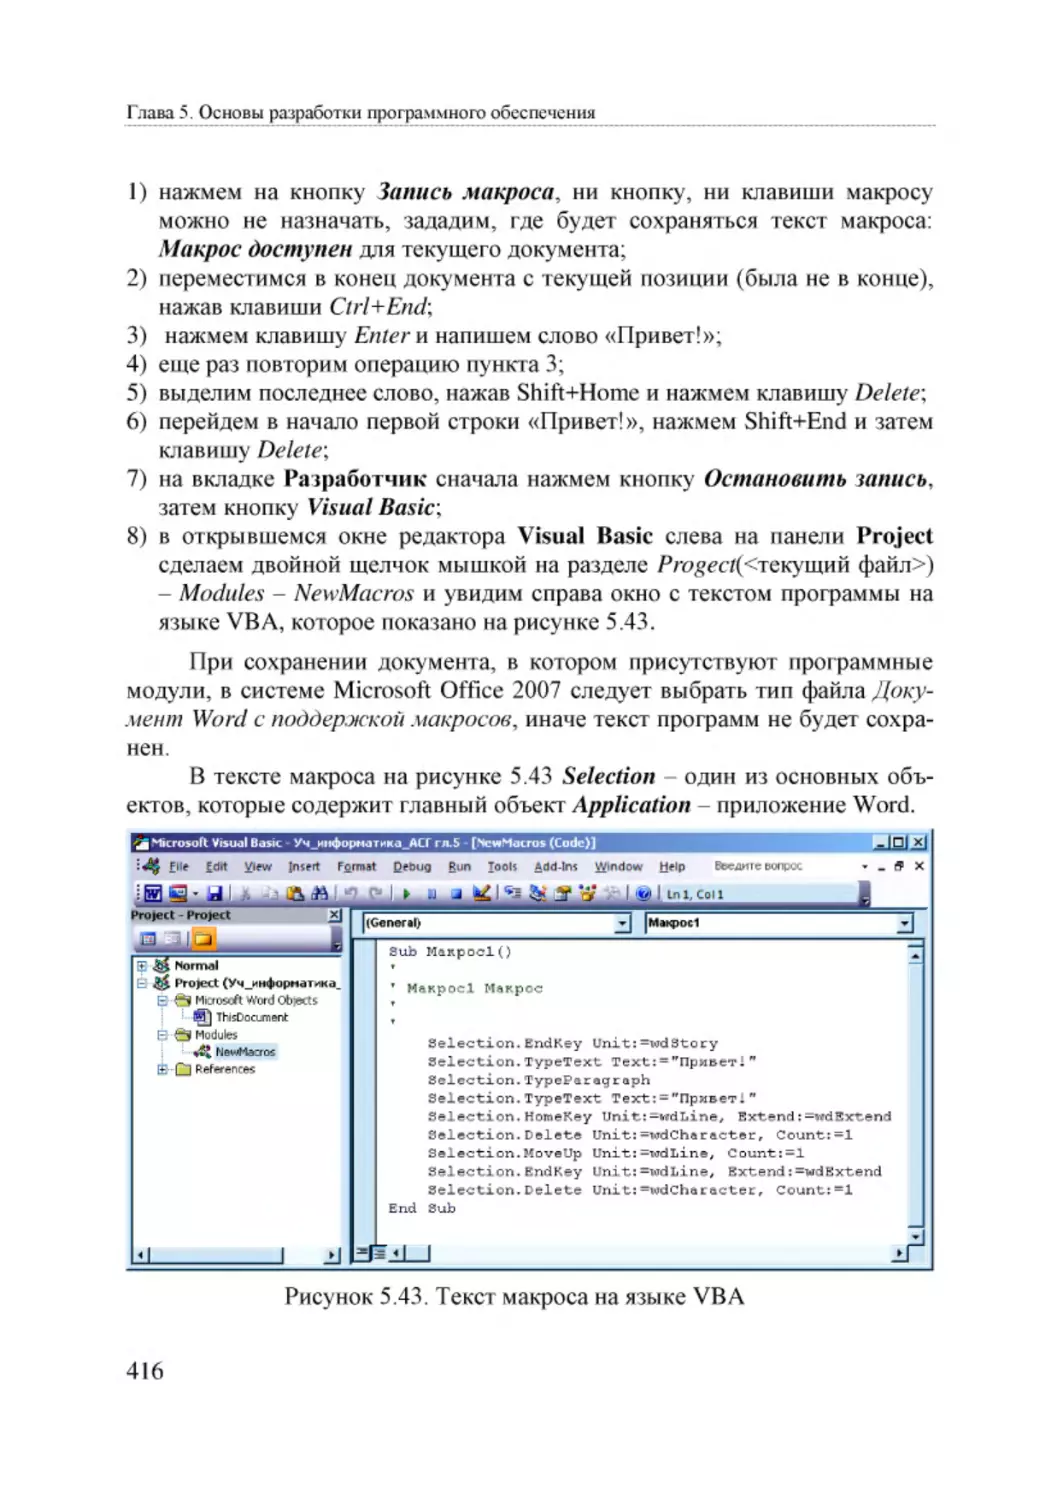 Informatika_Uchebnik_dlya_vuzov_2010 416